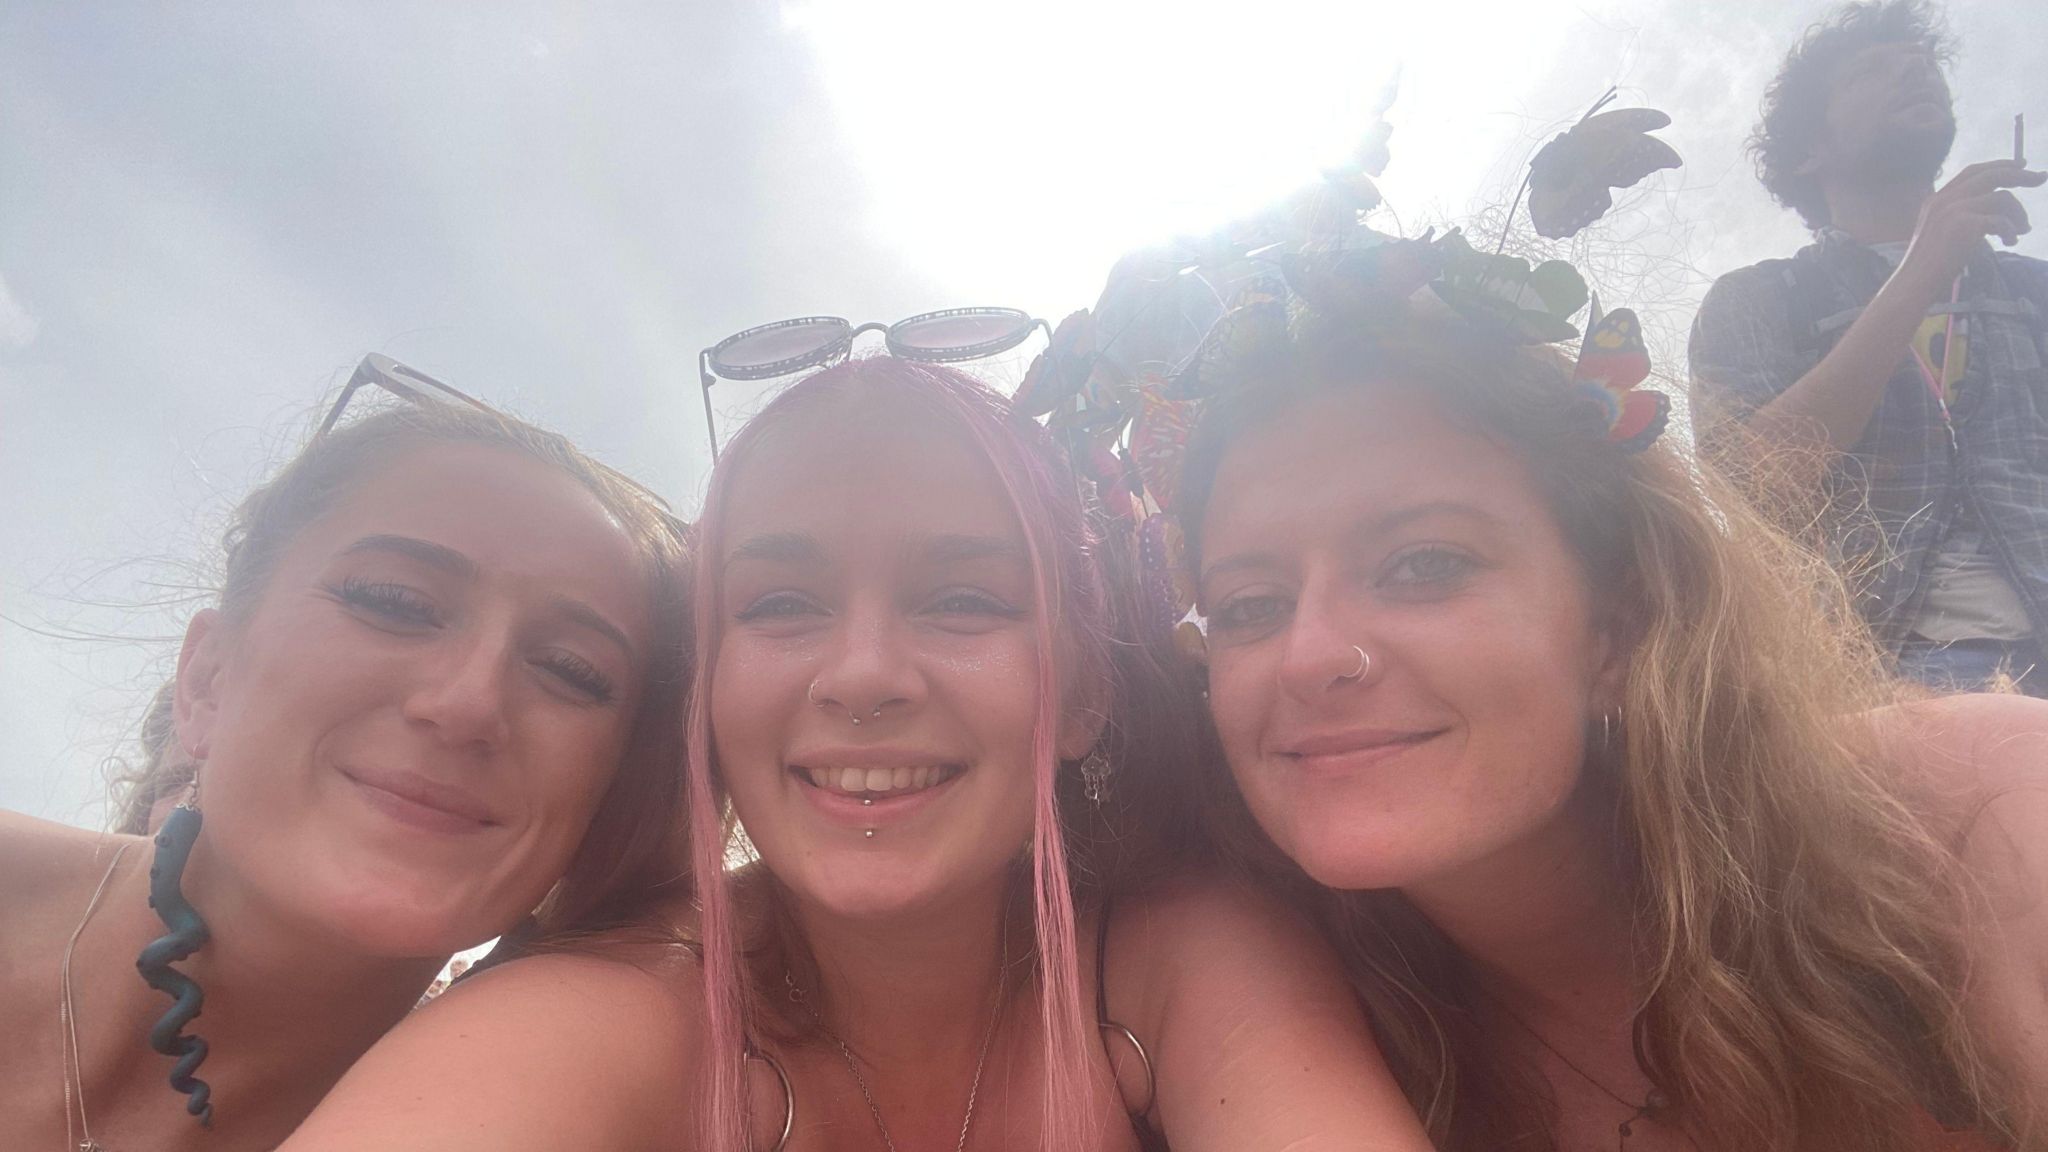 Three women smiling at camera at festival